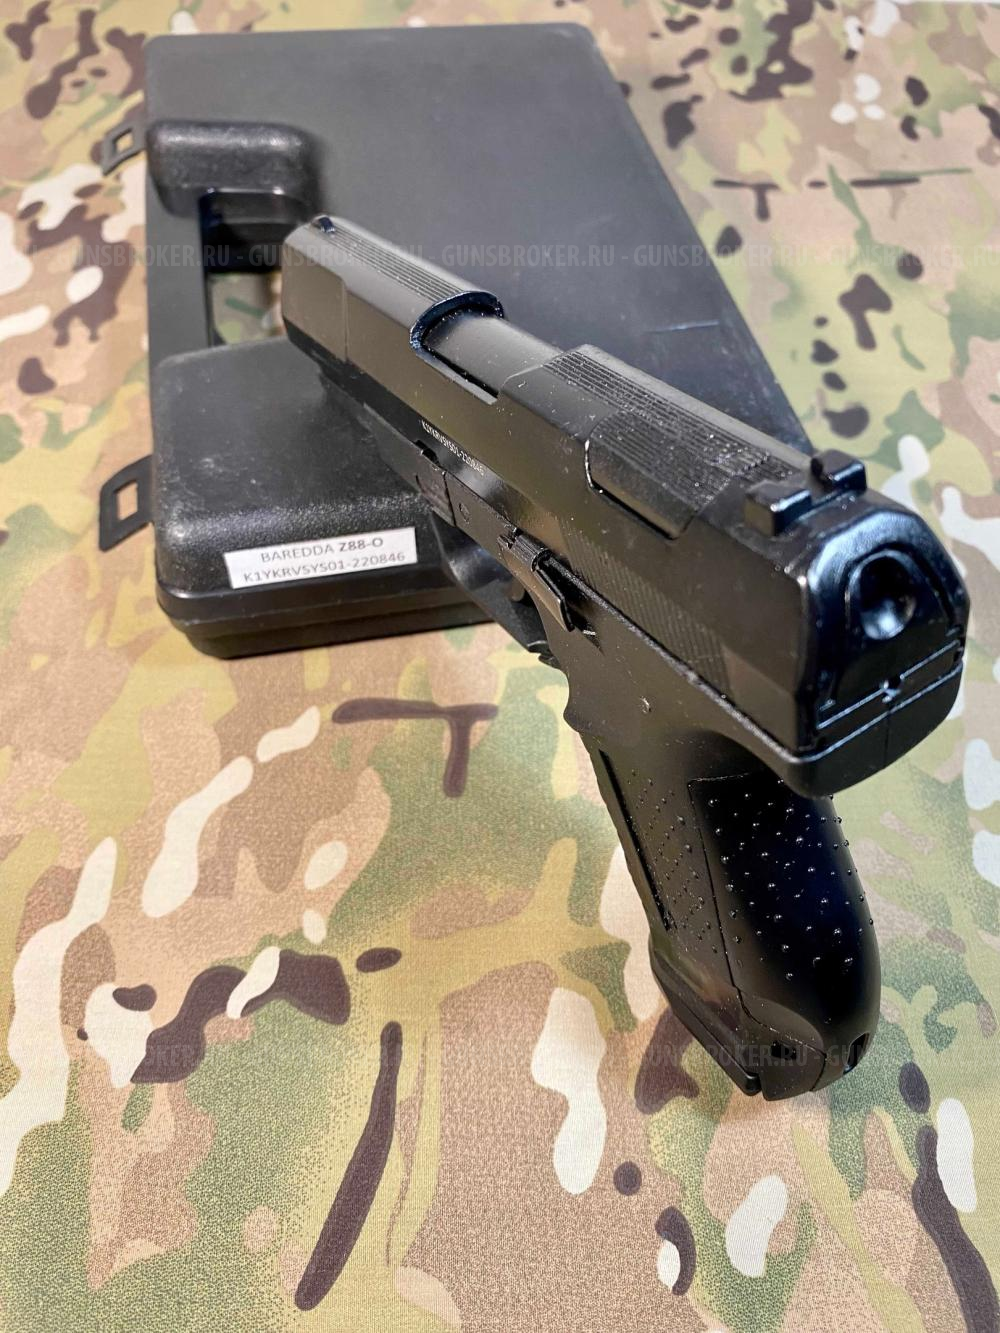 Охолощенный пистолет Baredda Z 88 (Walther CP99) , новые.